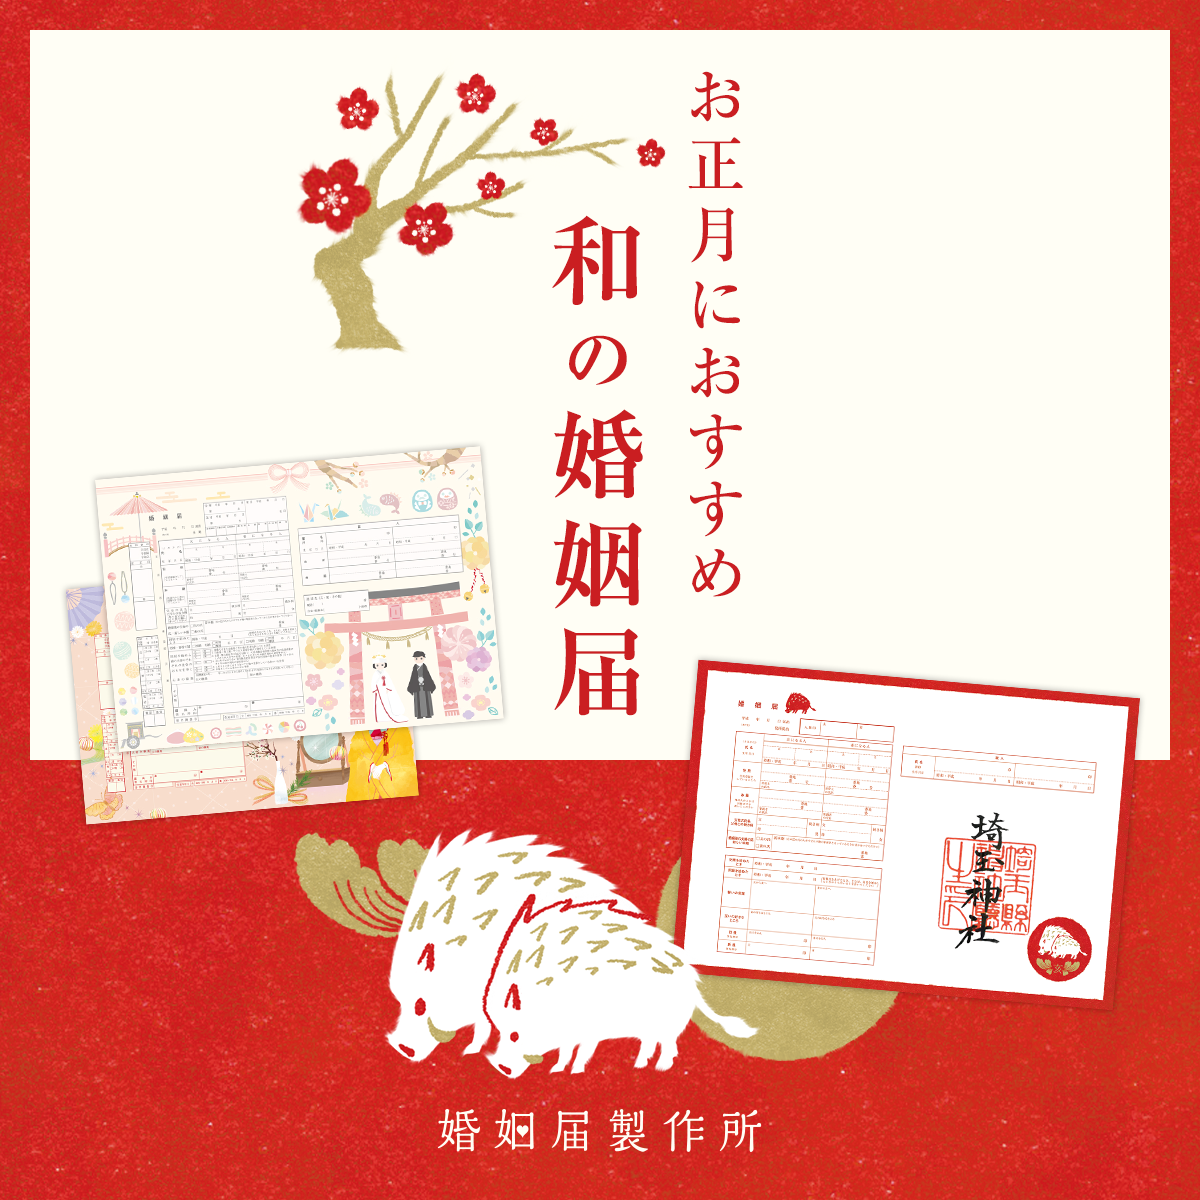 平成最後のお正月に入籍予定のカップルへ 新年にぴったりな和風デザインの婚姻届12選 株式会社メイションのプレスリリース